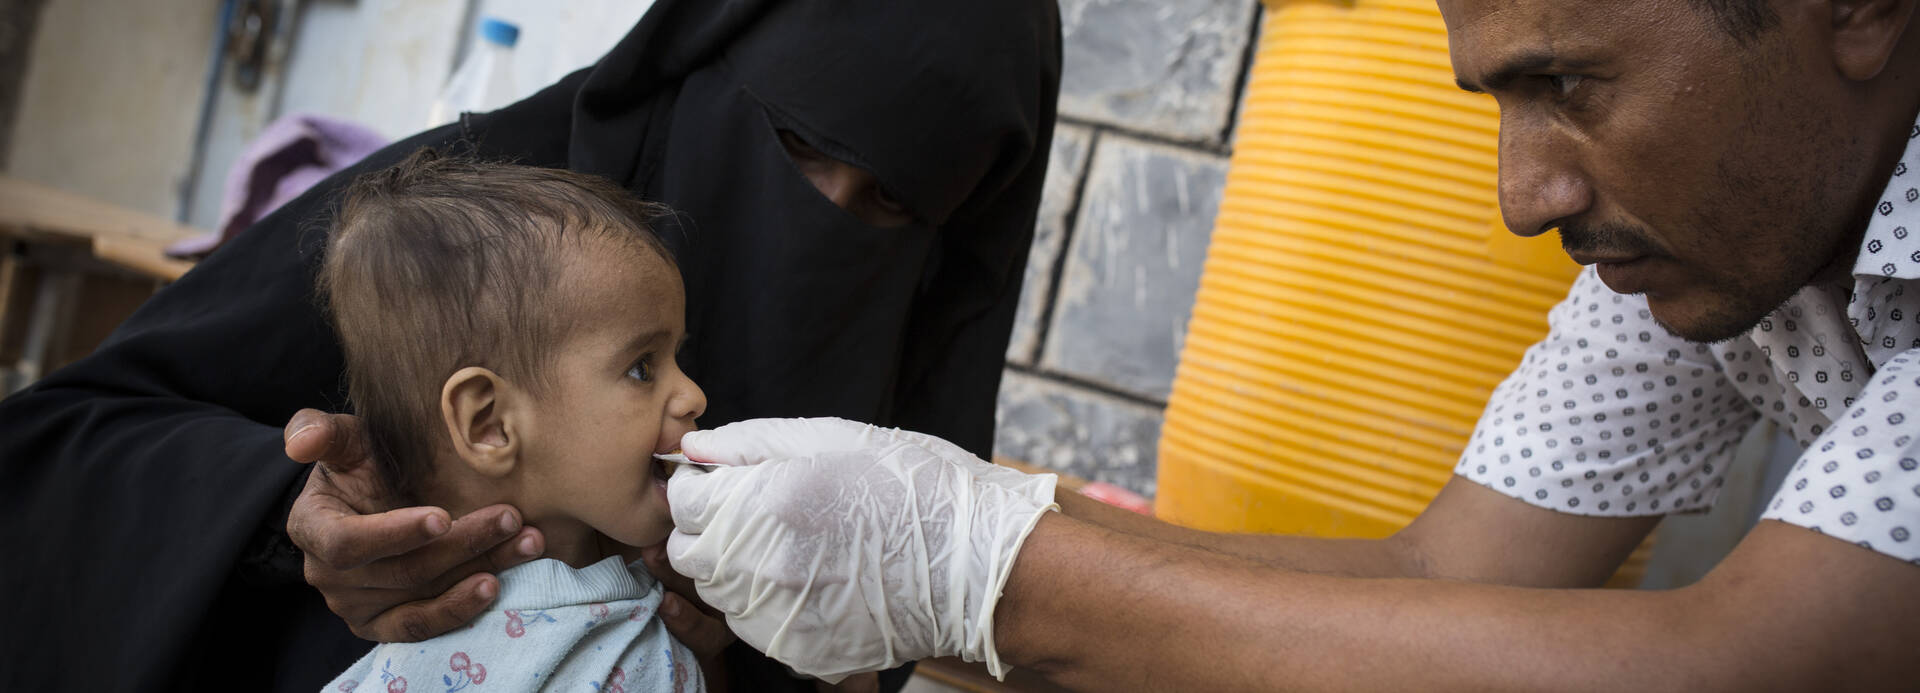 Mitarbeiter von Aktion gegen den Hunger versorgt mangelernährtes Kind im Jemen